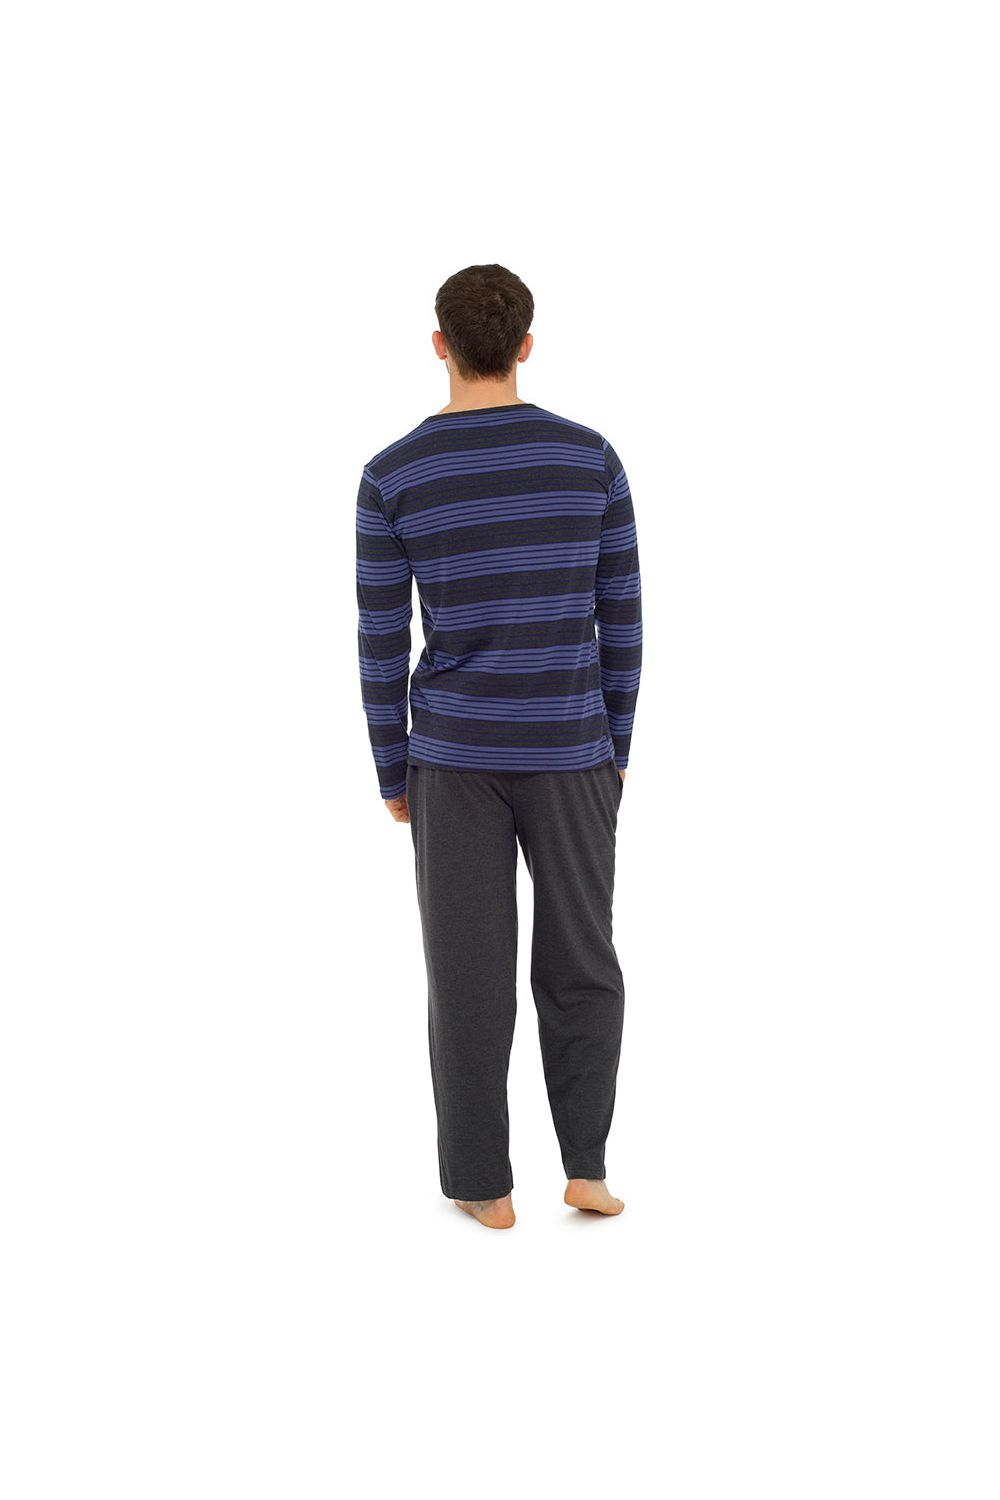 Tom Franks Mens Pyjama Set Long Sleeve Striped Top - Pyjamas.com